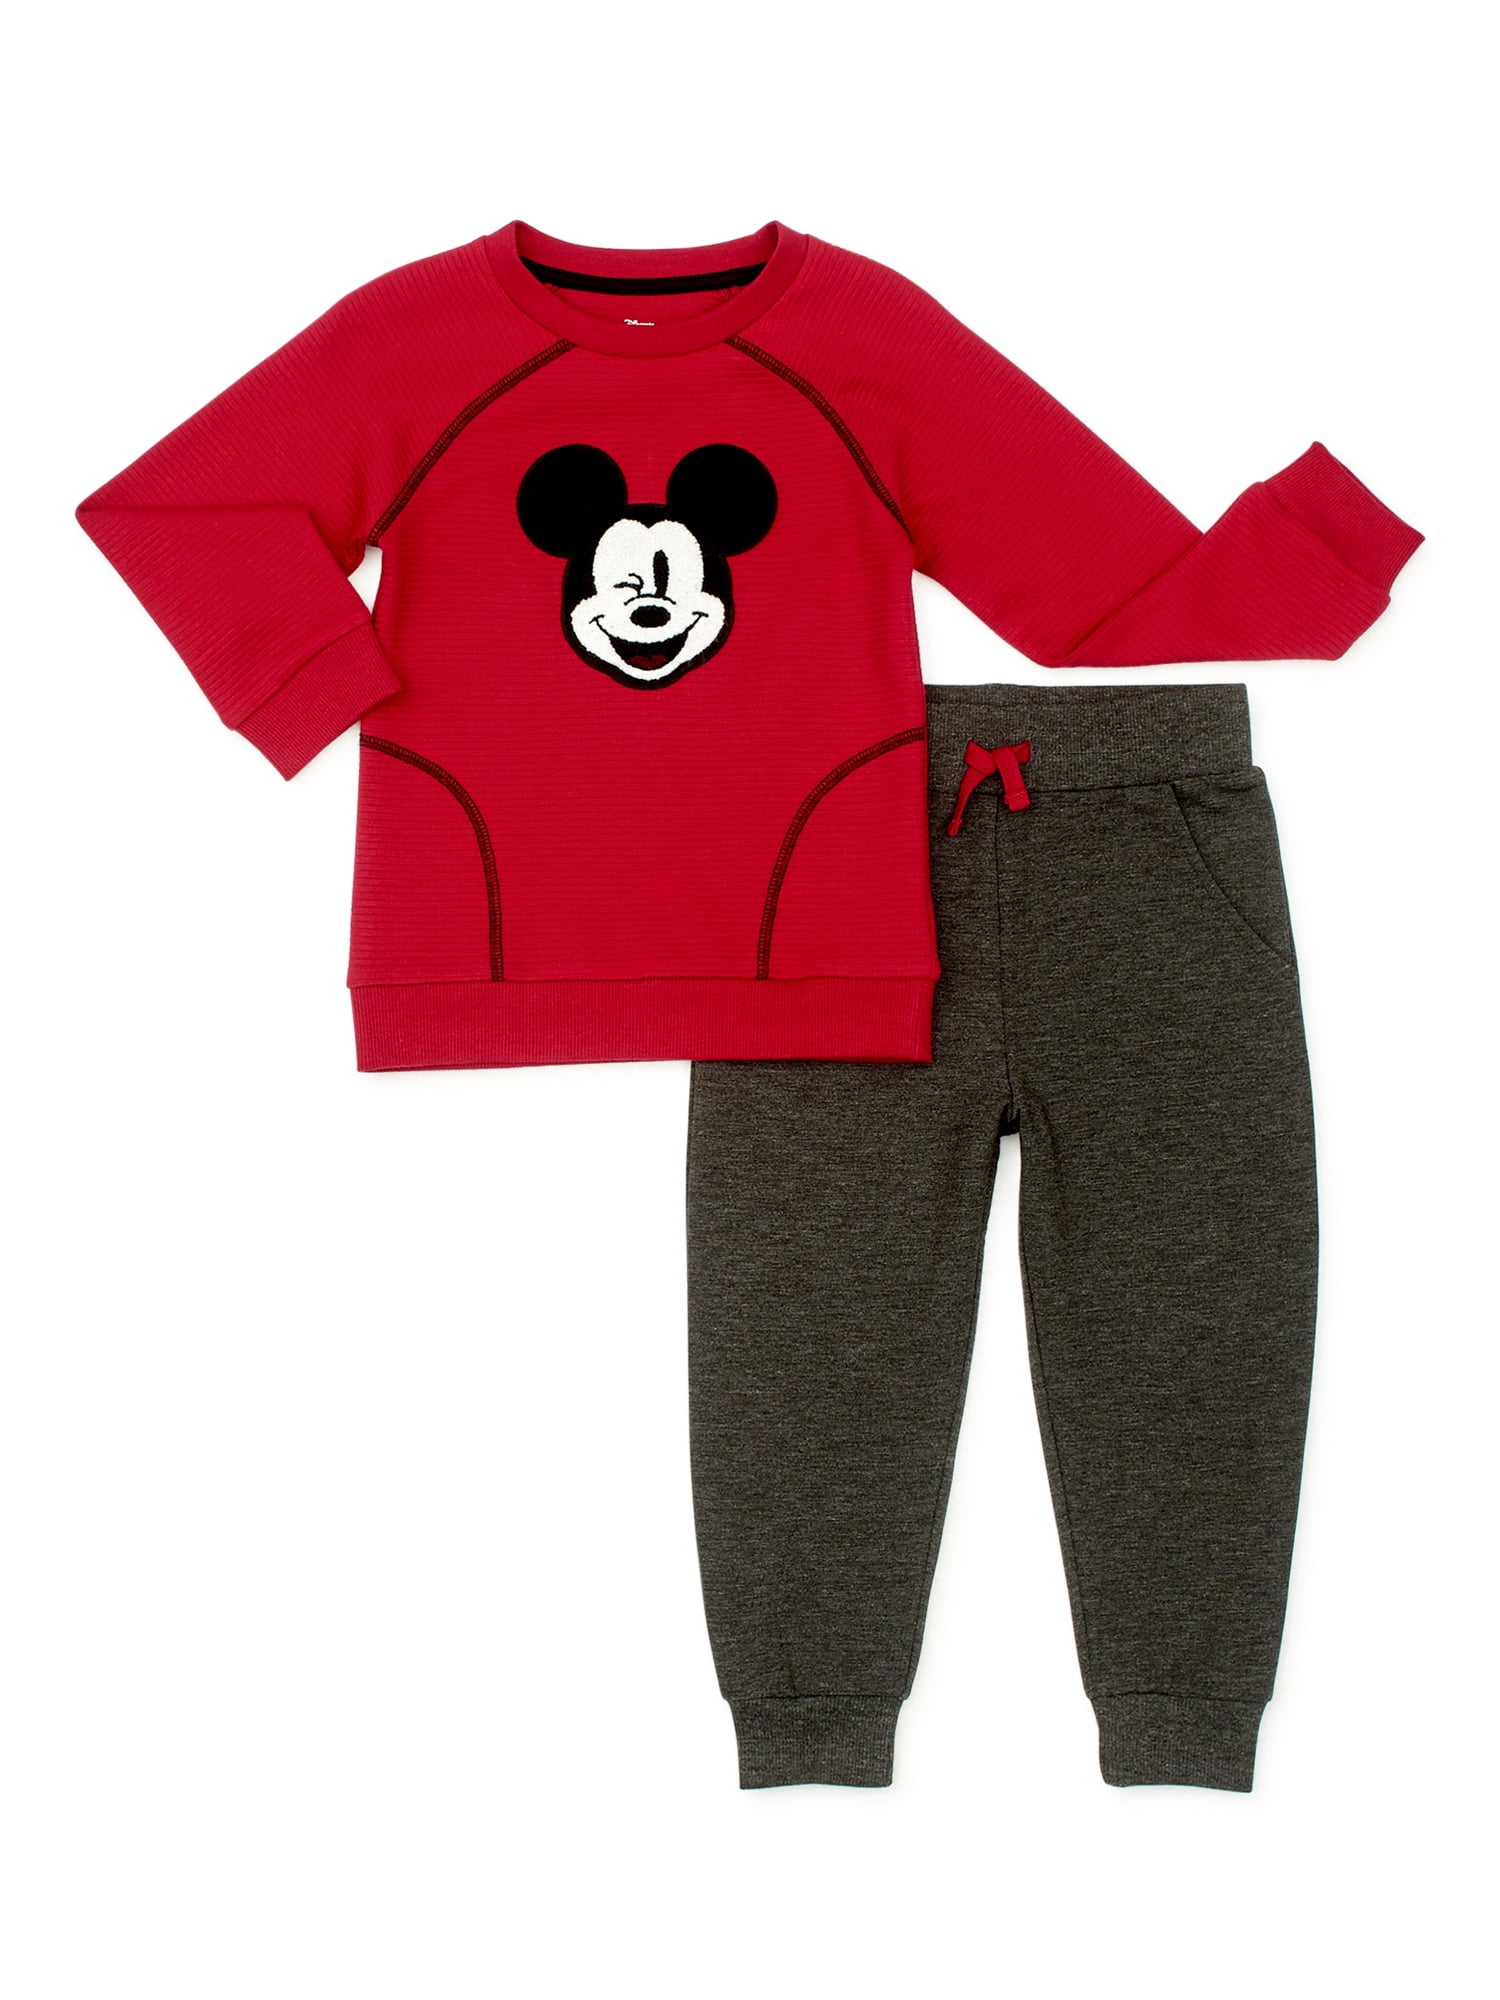 Mickey Mouse Infant /& Toddler Boy/'s Vest Shirt /& Sweat Pants 12M 2T /& 4T 5T